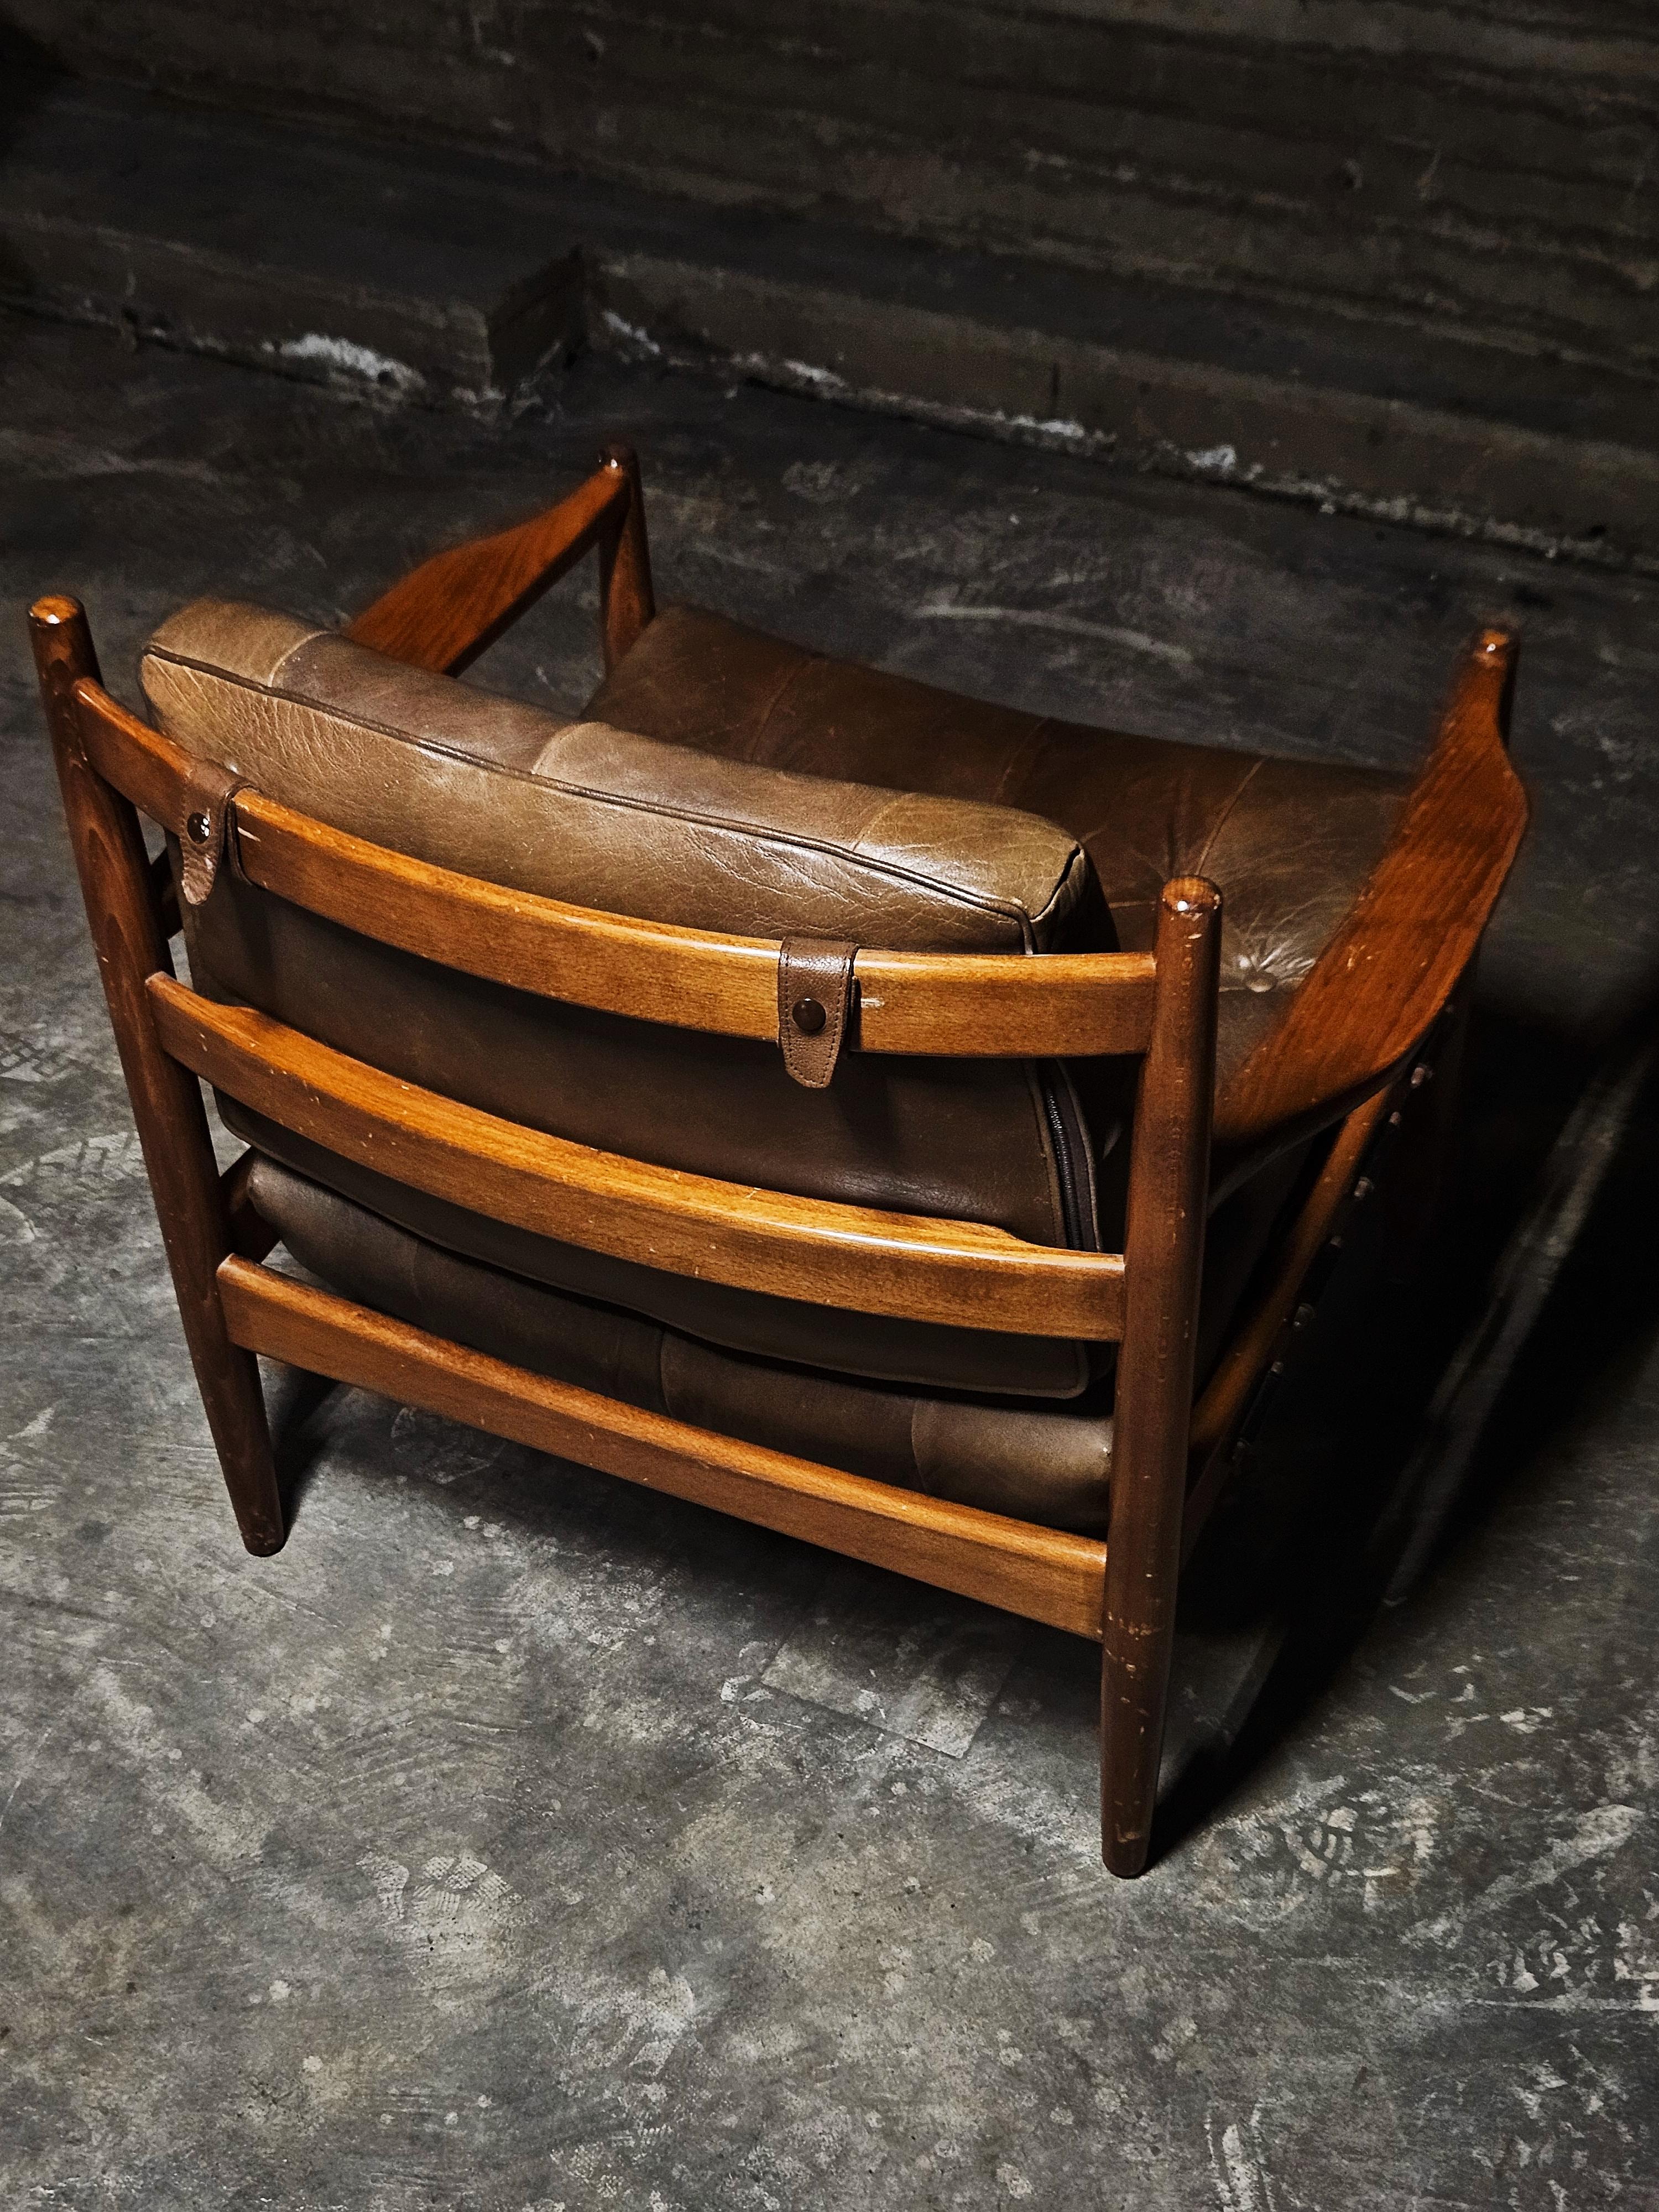 Der Sessel wurde von Ingemar Thillmark entworfen, das Modell heißt 